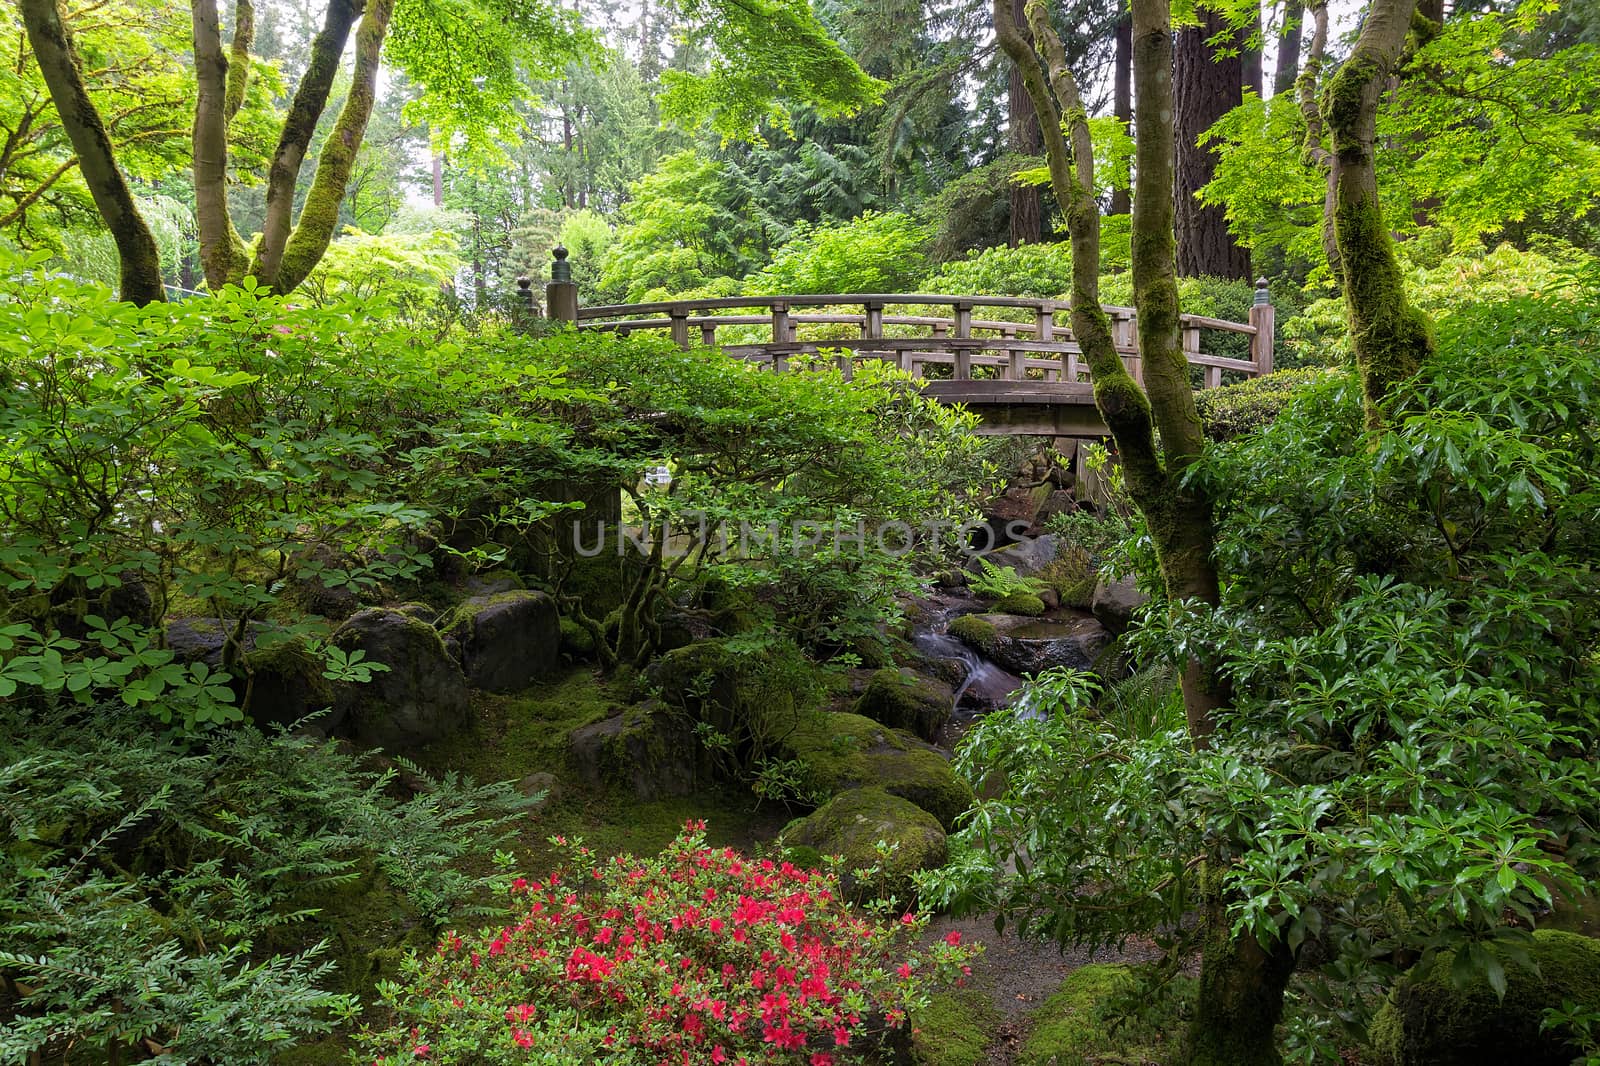 Bridge in Japanese Garden by jpldesigns